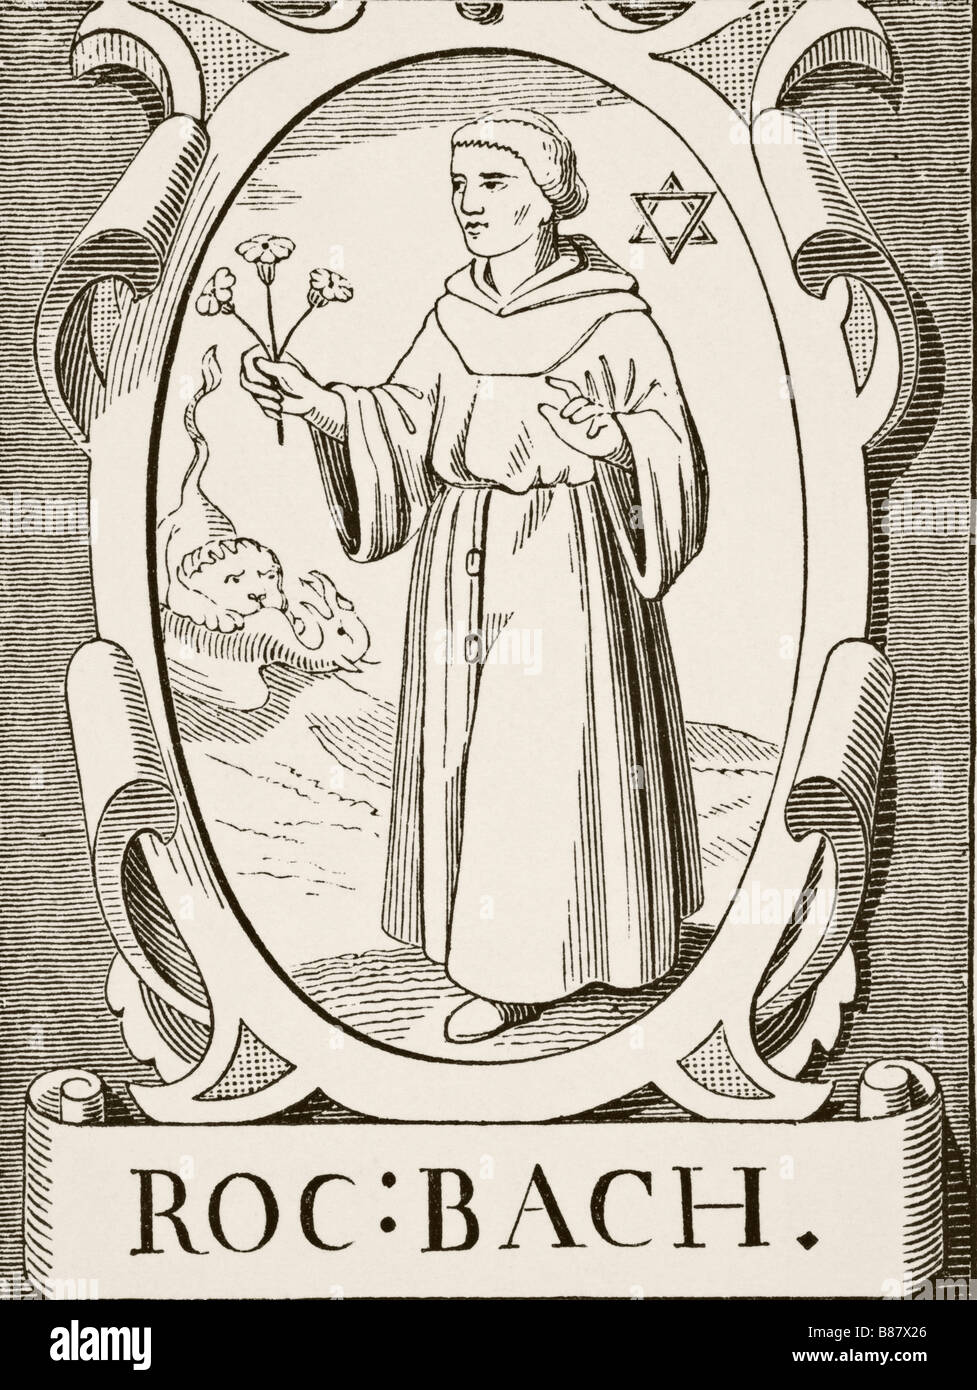 Roger Bacon, vers 1214 - 1294, alias Docteur mirabilis. Philosophe anglais médiéval et frère franciscain. Banque D'Images